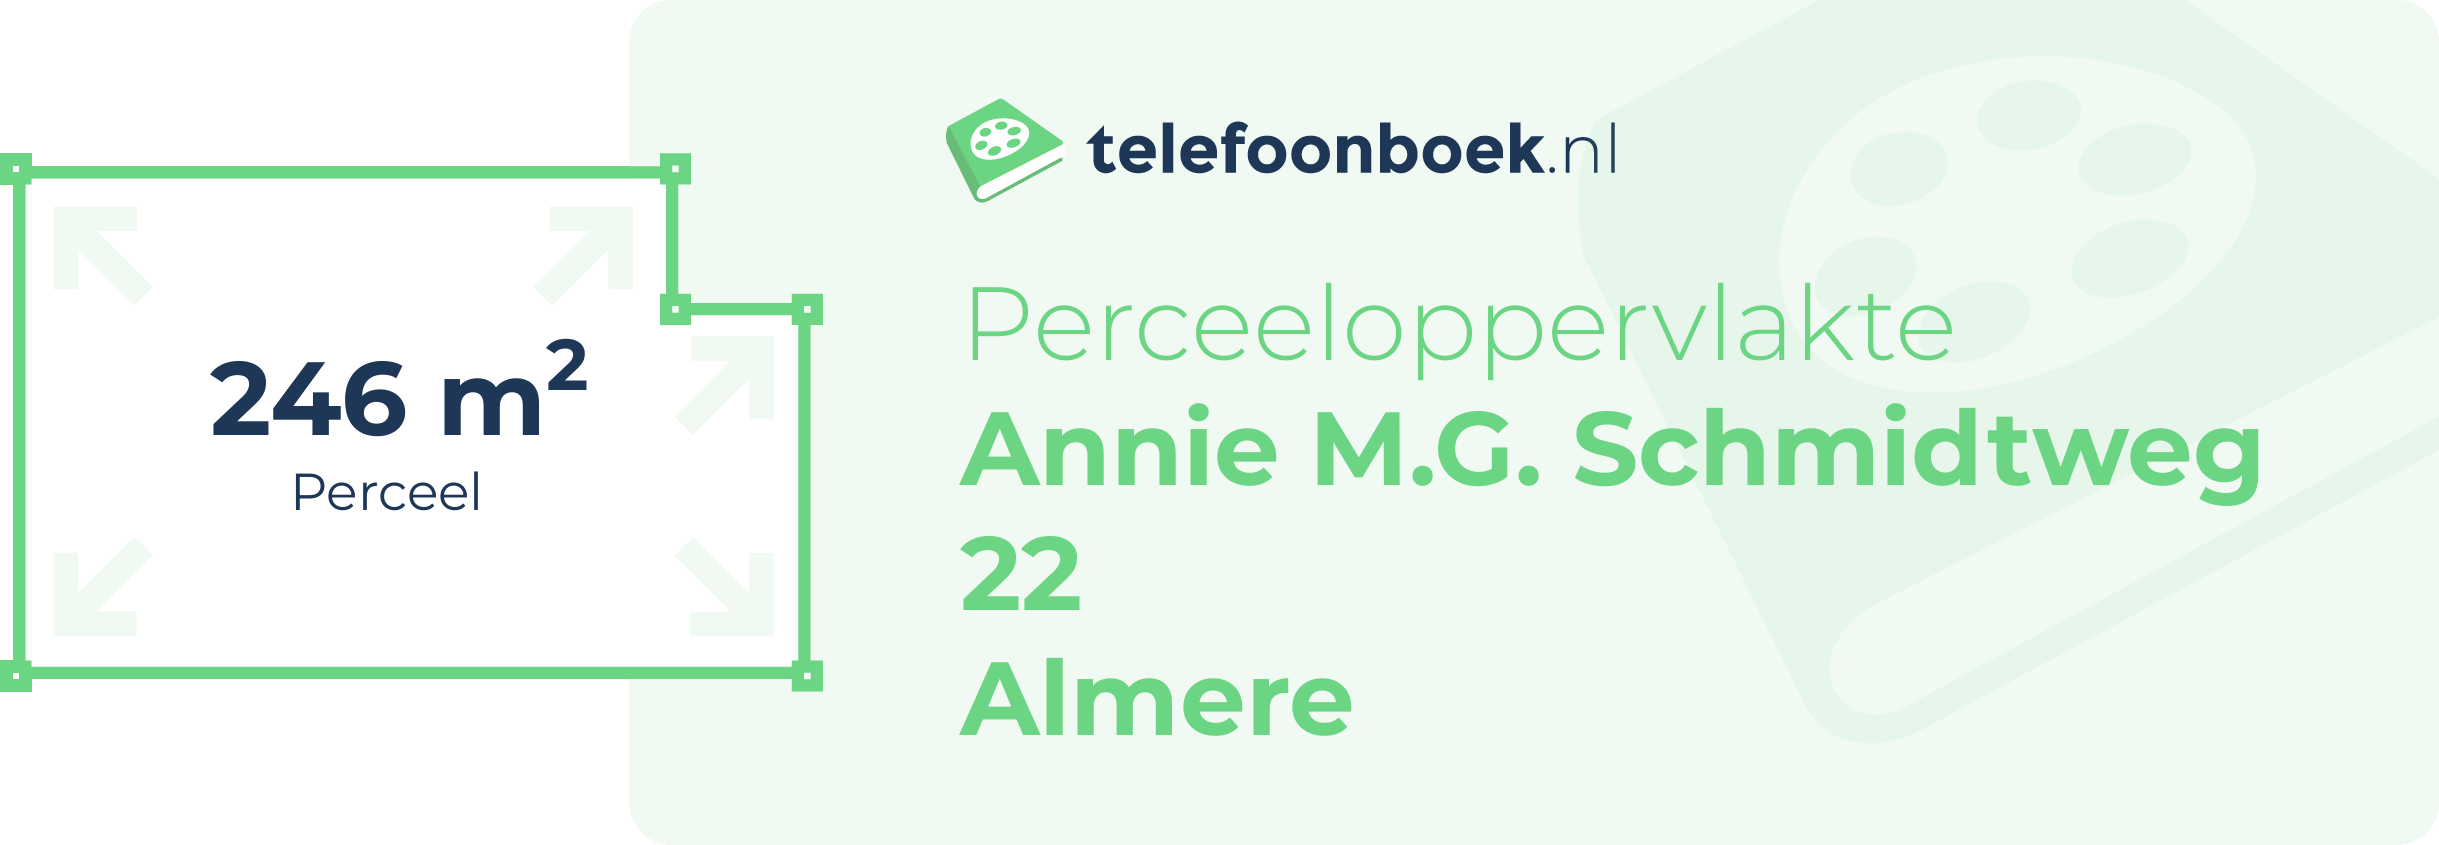 Perceeloppervlakte Annie M.G. Schmidtweg 22 Almere